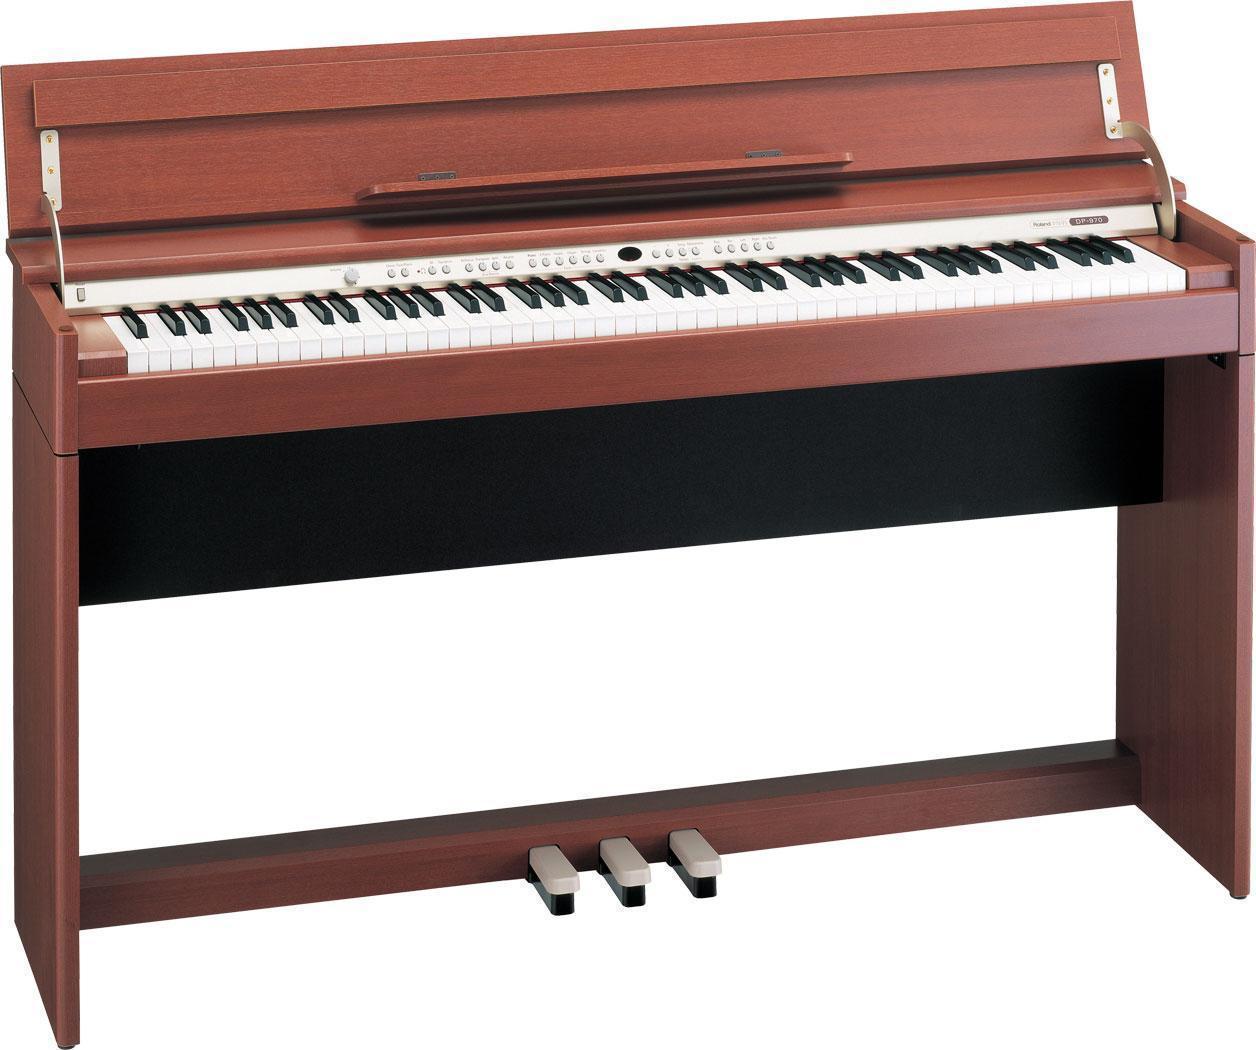 đàn piano điện Roland dp 970